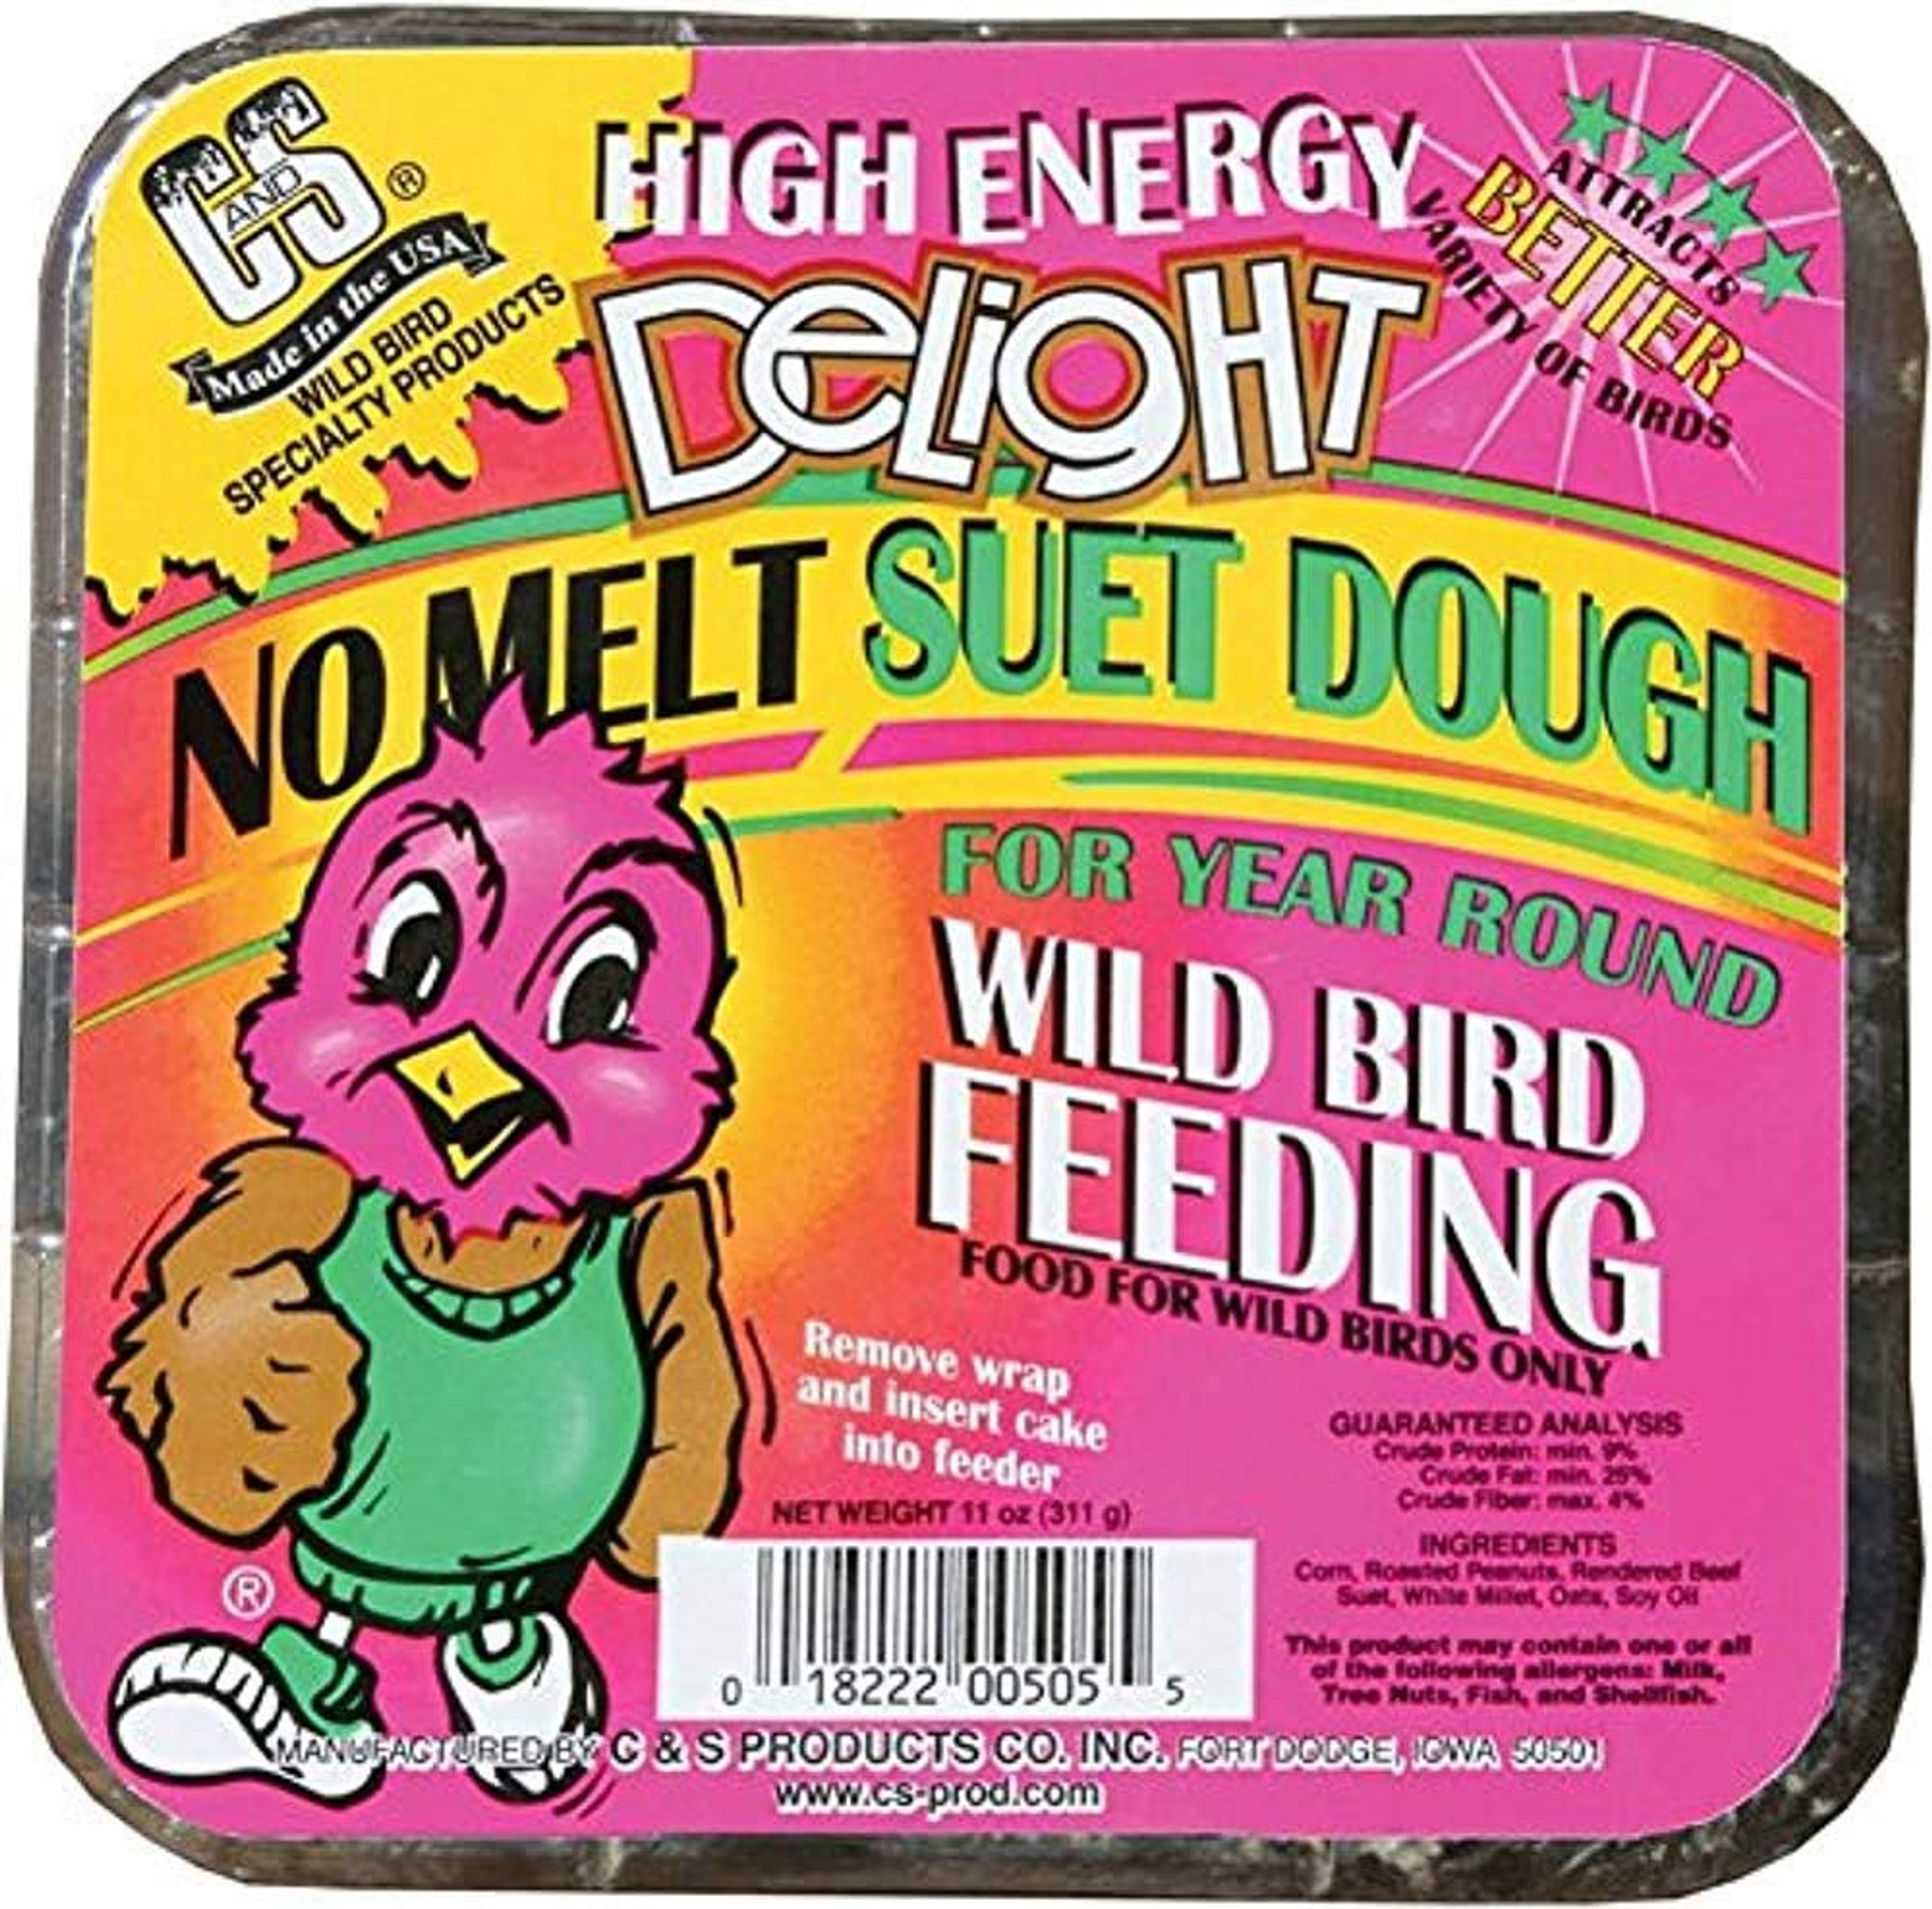 C & S High Energy Delight No-Melt Suet Dough for Year Round Wild Bird Feeding, 11 oz (1 Suet Cake)